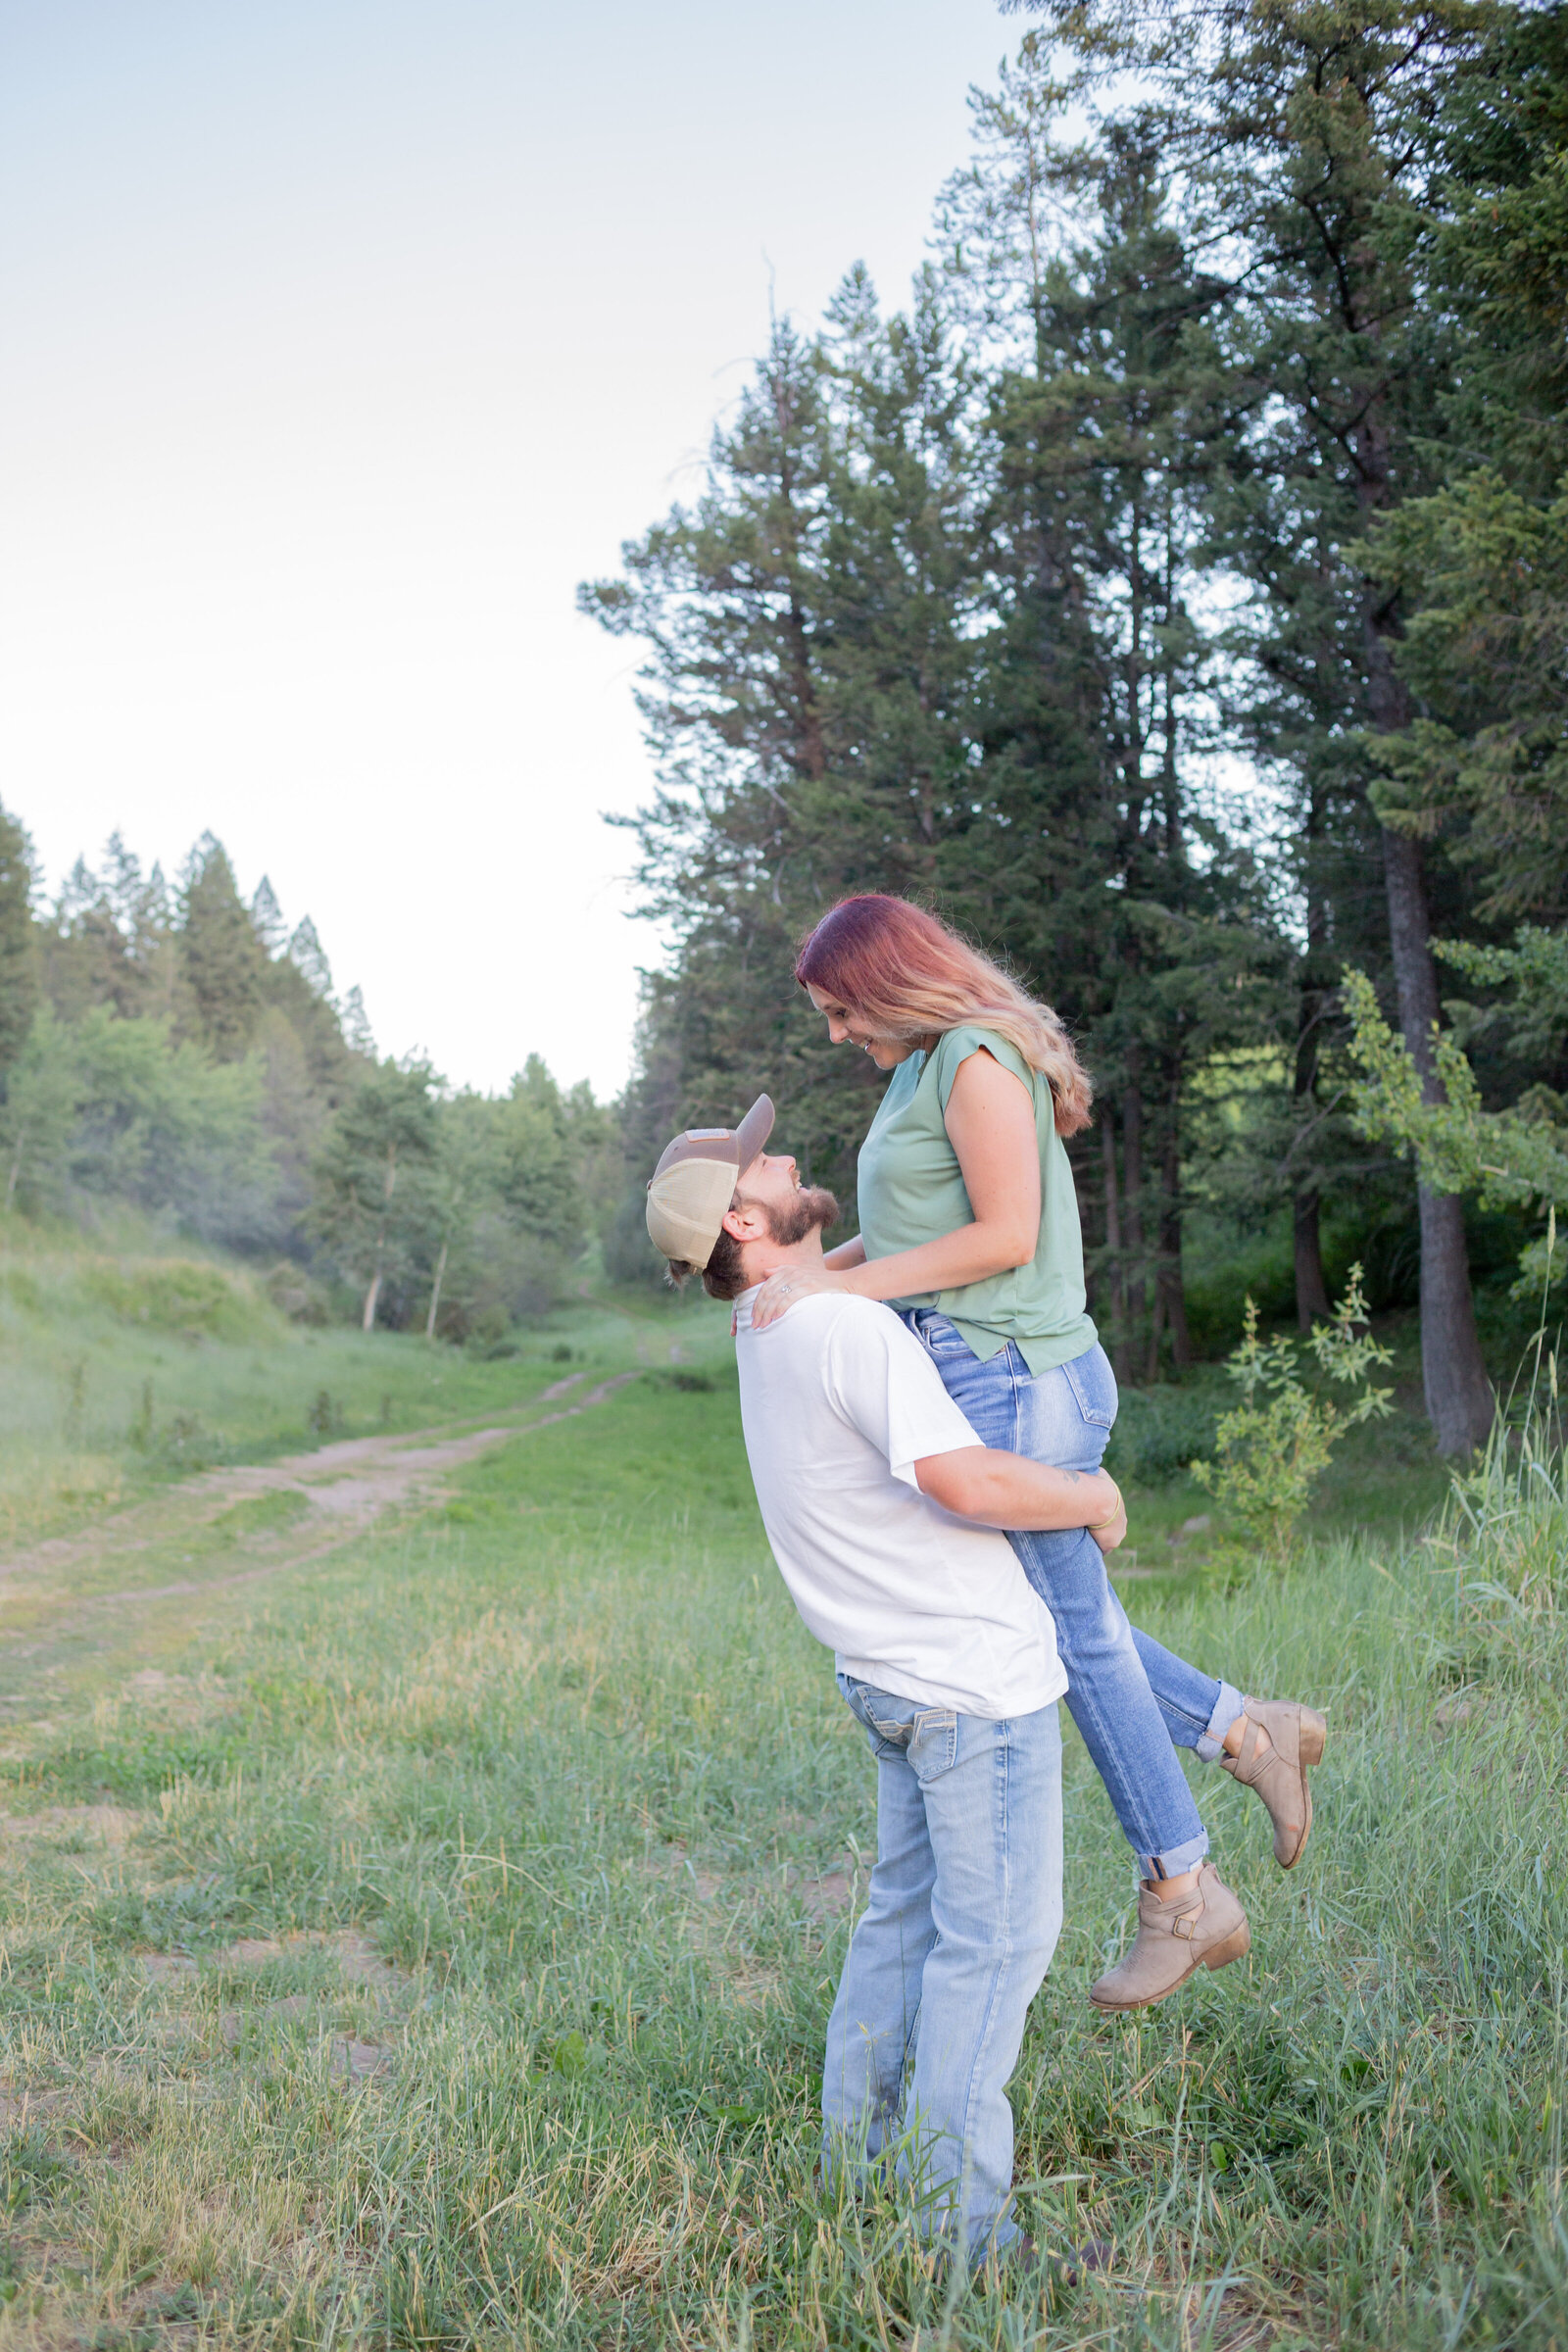 Idaho Falls Photographers capture man lifting woman during outdoor photos